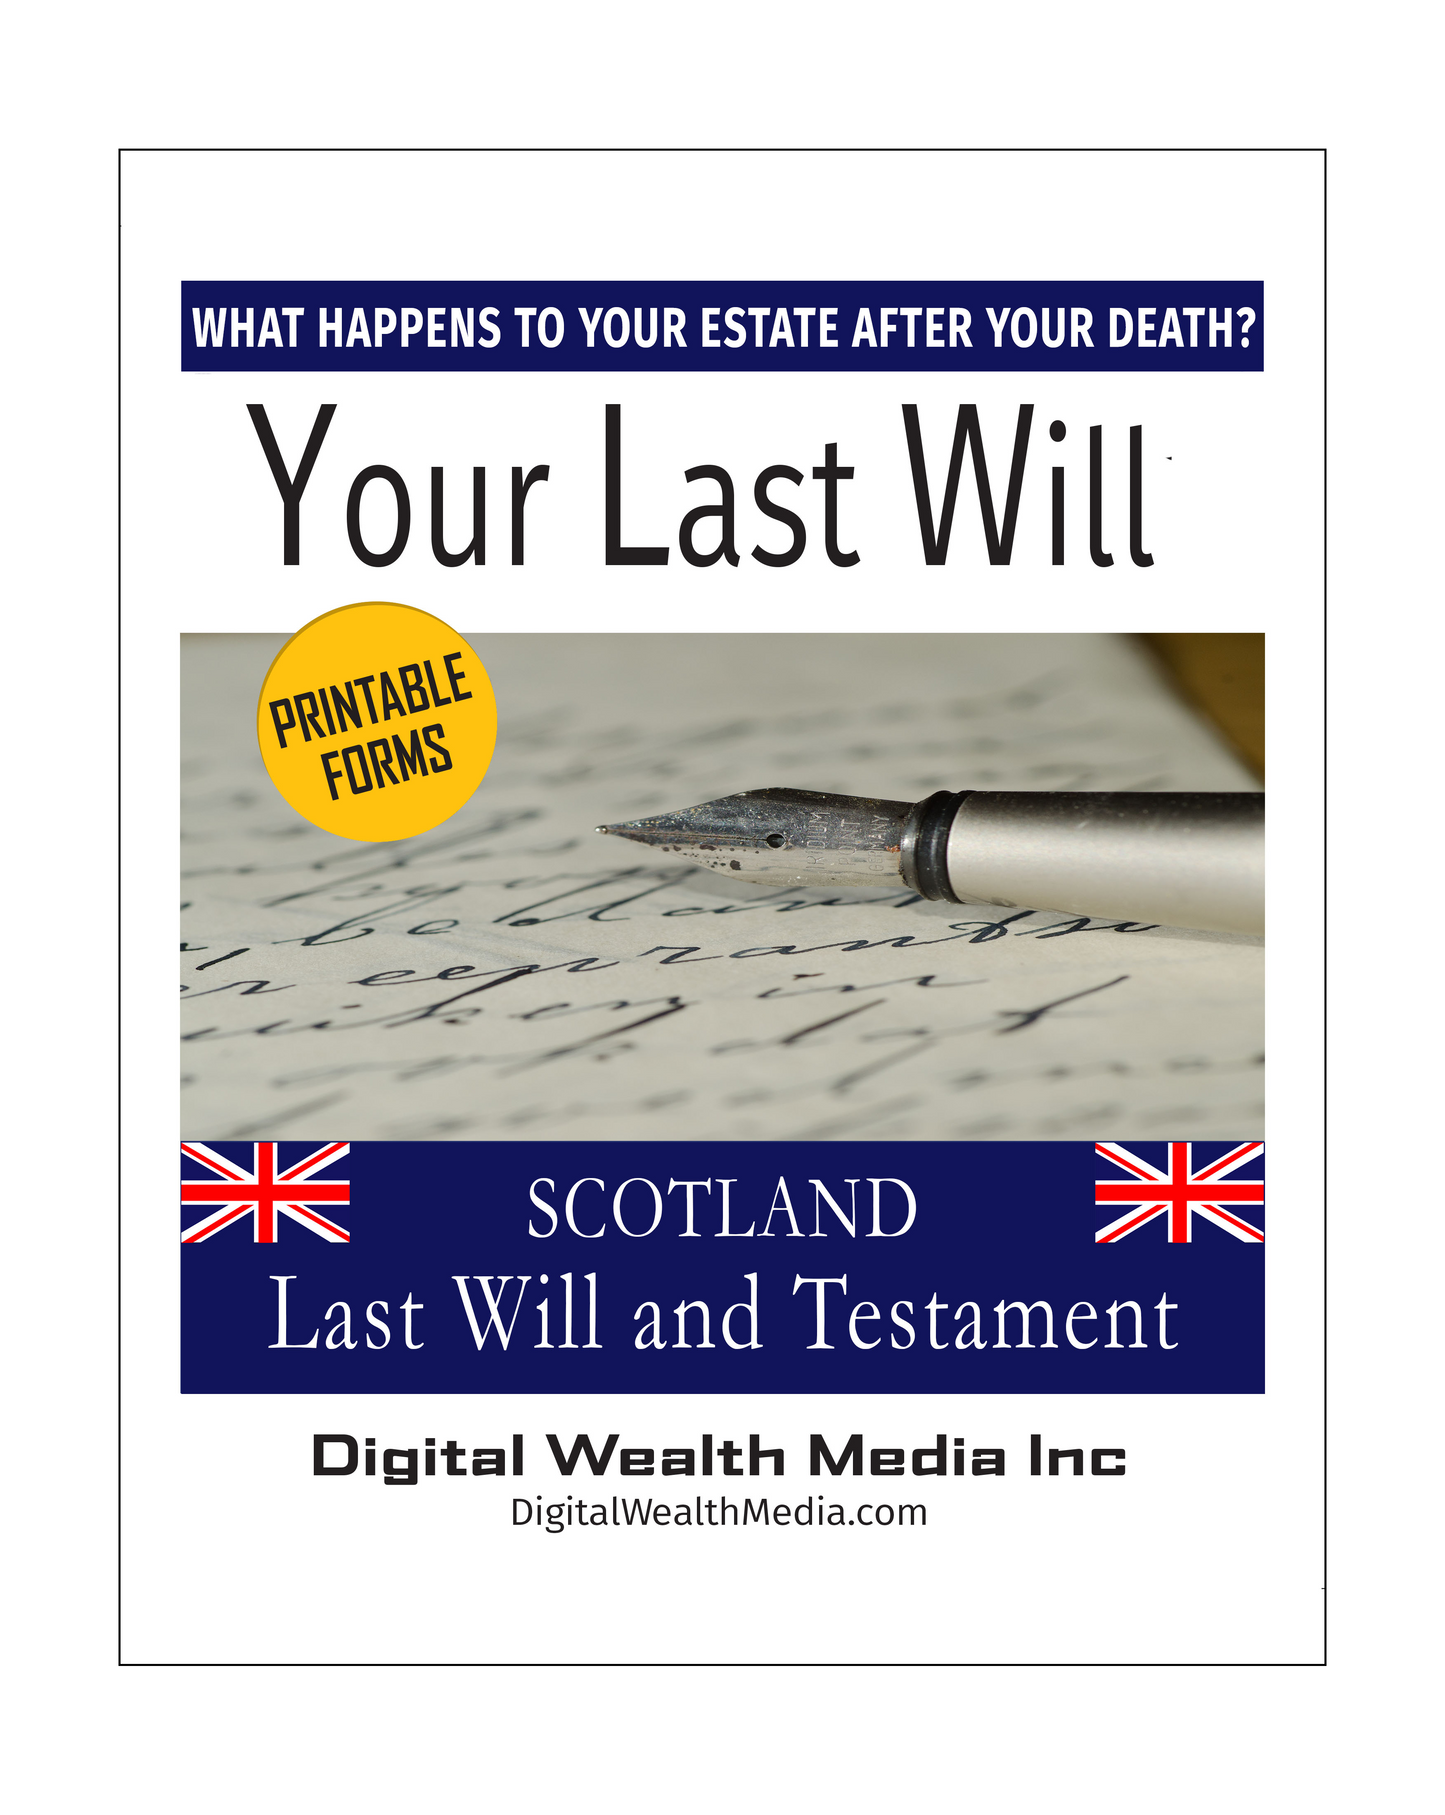 Scotland Last Will and Testament